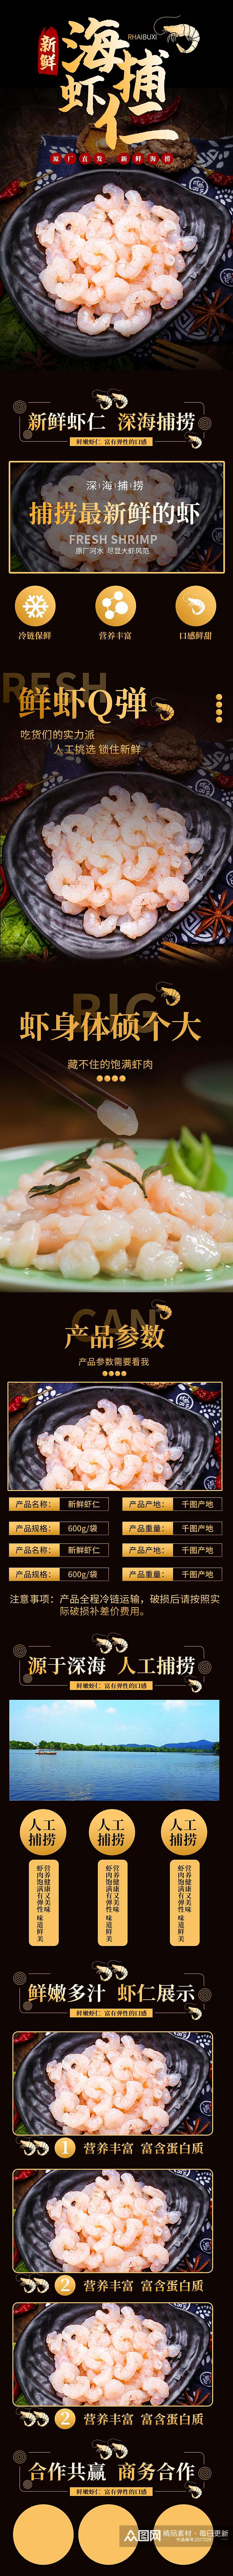 新鲜海捕虾仁电商食品详情页素材